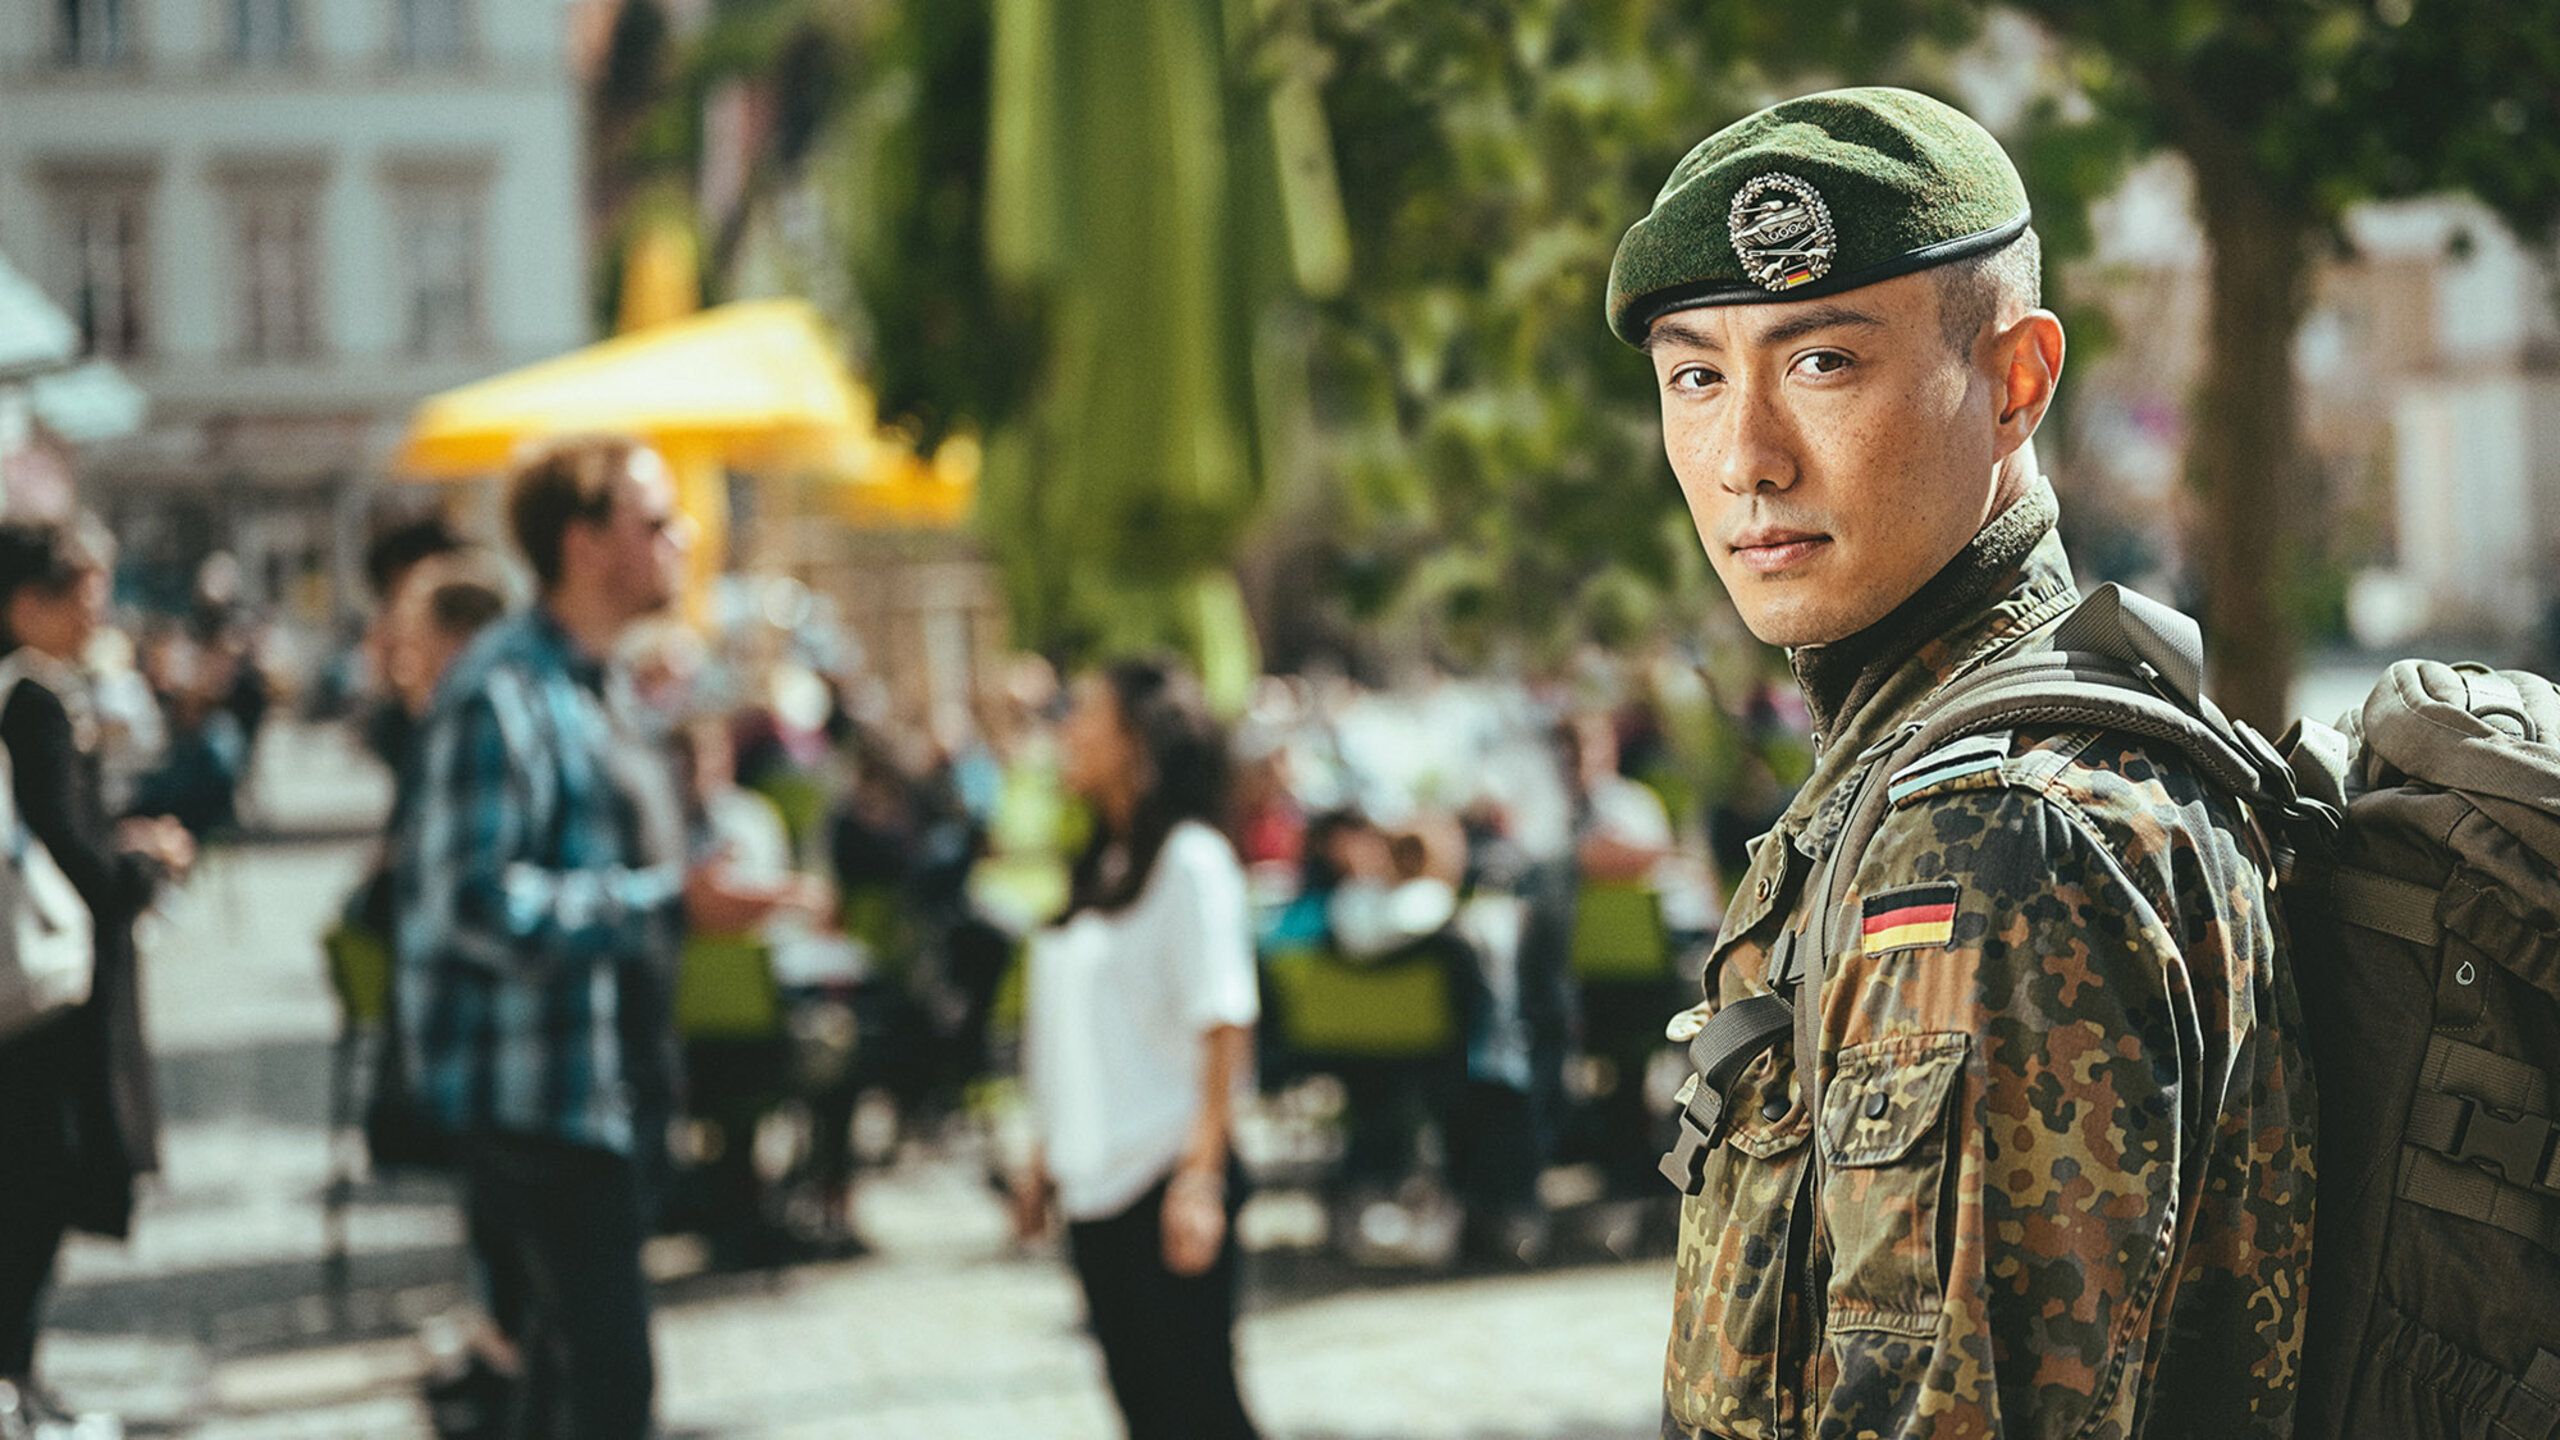 Ein Soldat in Uniform schaut über die Schulter in die Kamera, im Hintergrund sind Menschen in einer Stadt zu erkennen.